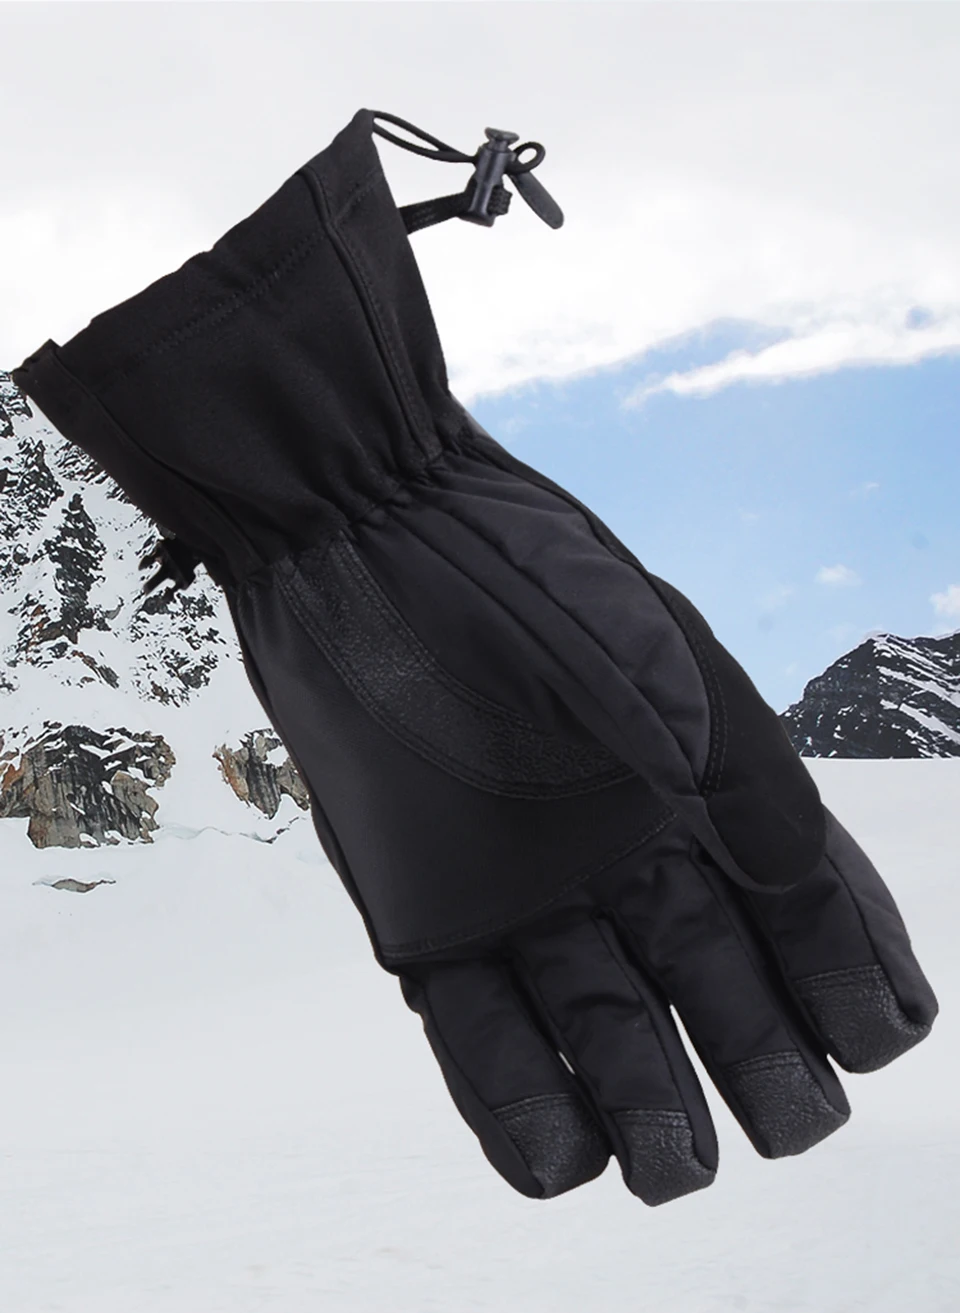 GOBYGO унисекс лыжные перчатки флисовые перчатки для сноуборда Зимние перчатки для верховой езды ветрозащитные водонепроницаемые зимние перчатки